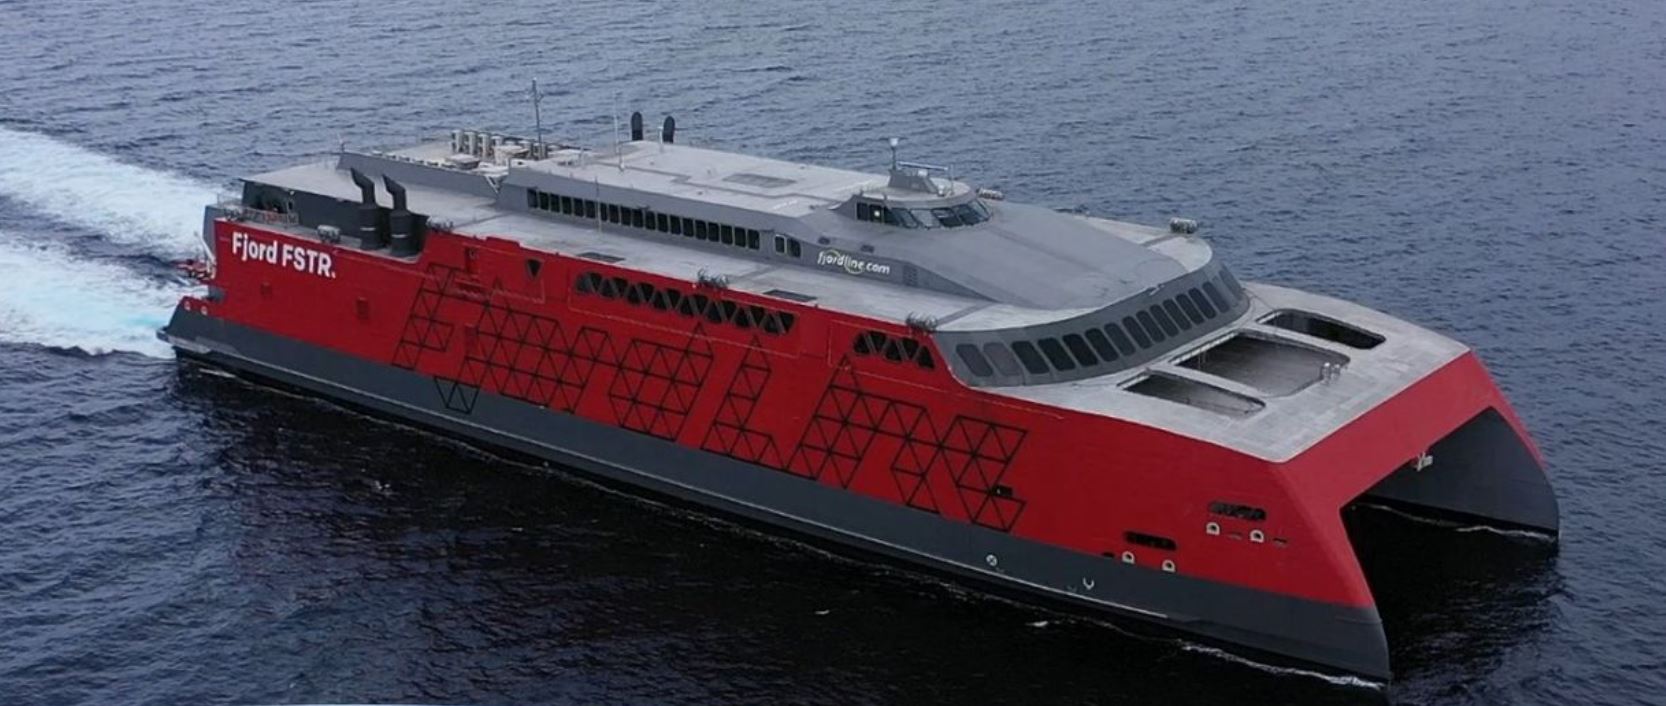 Philippine-mad high-speed ferry Fjord FSTR